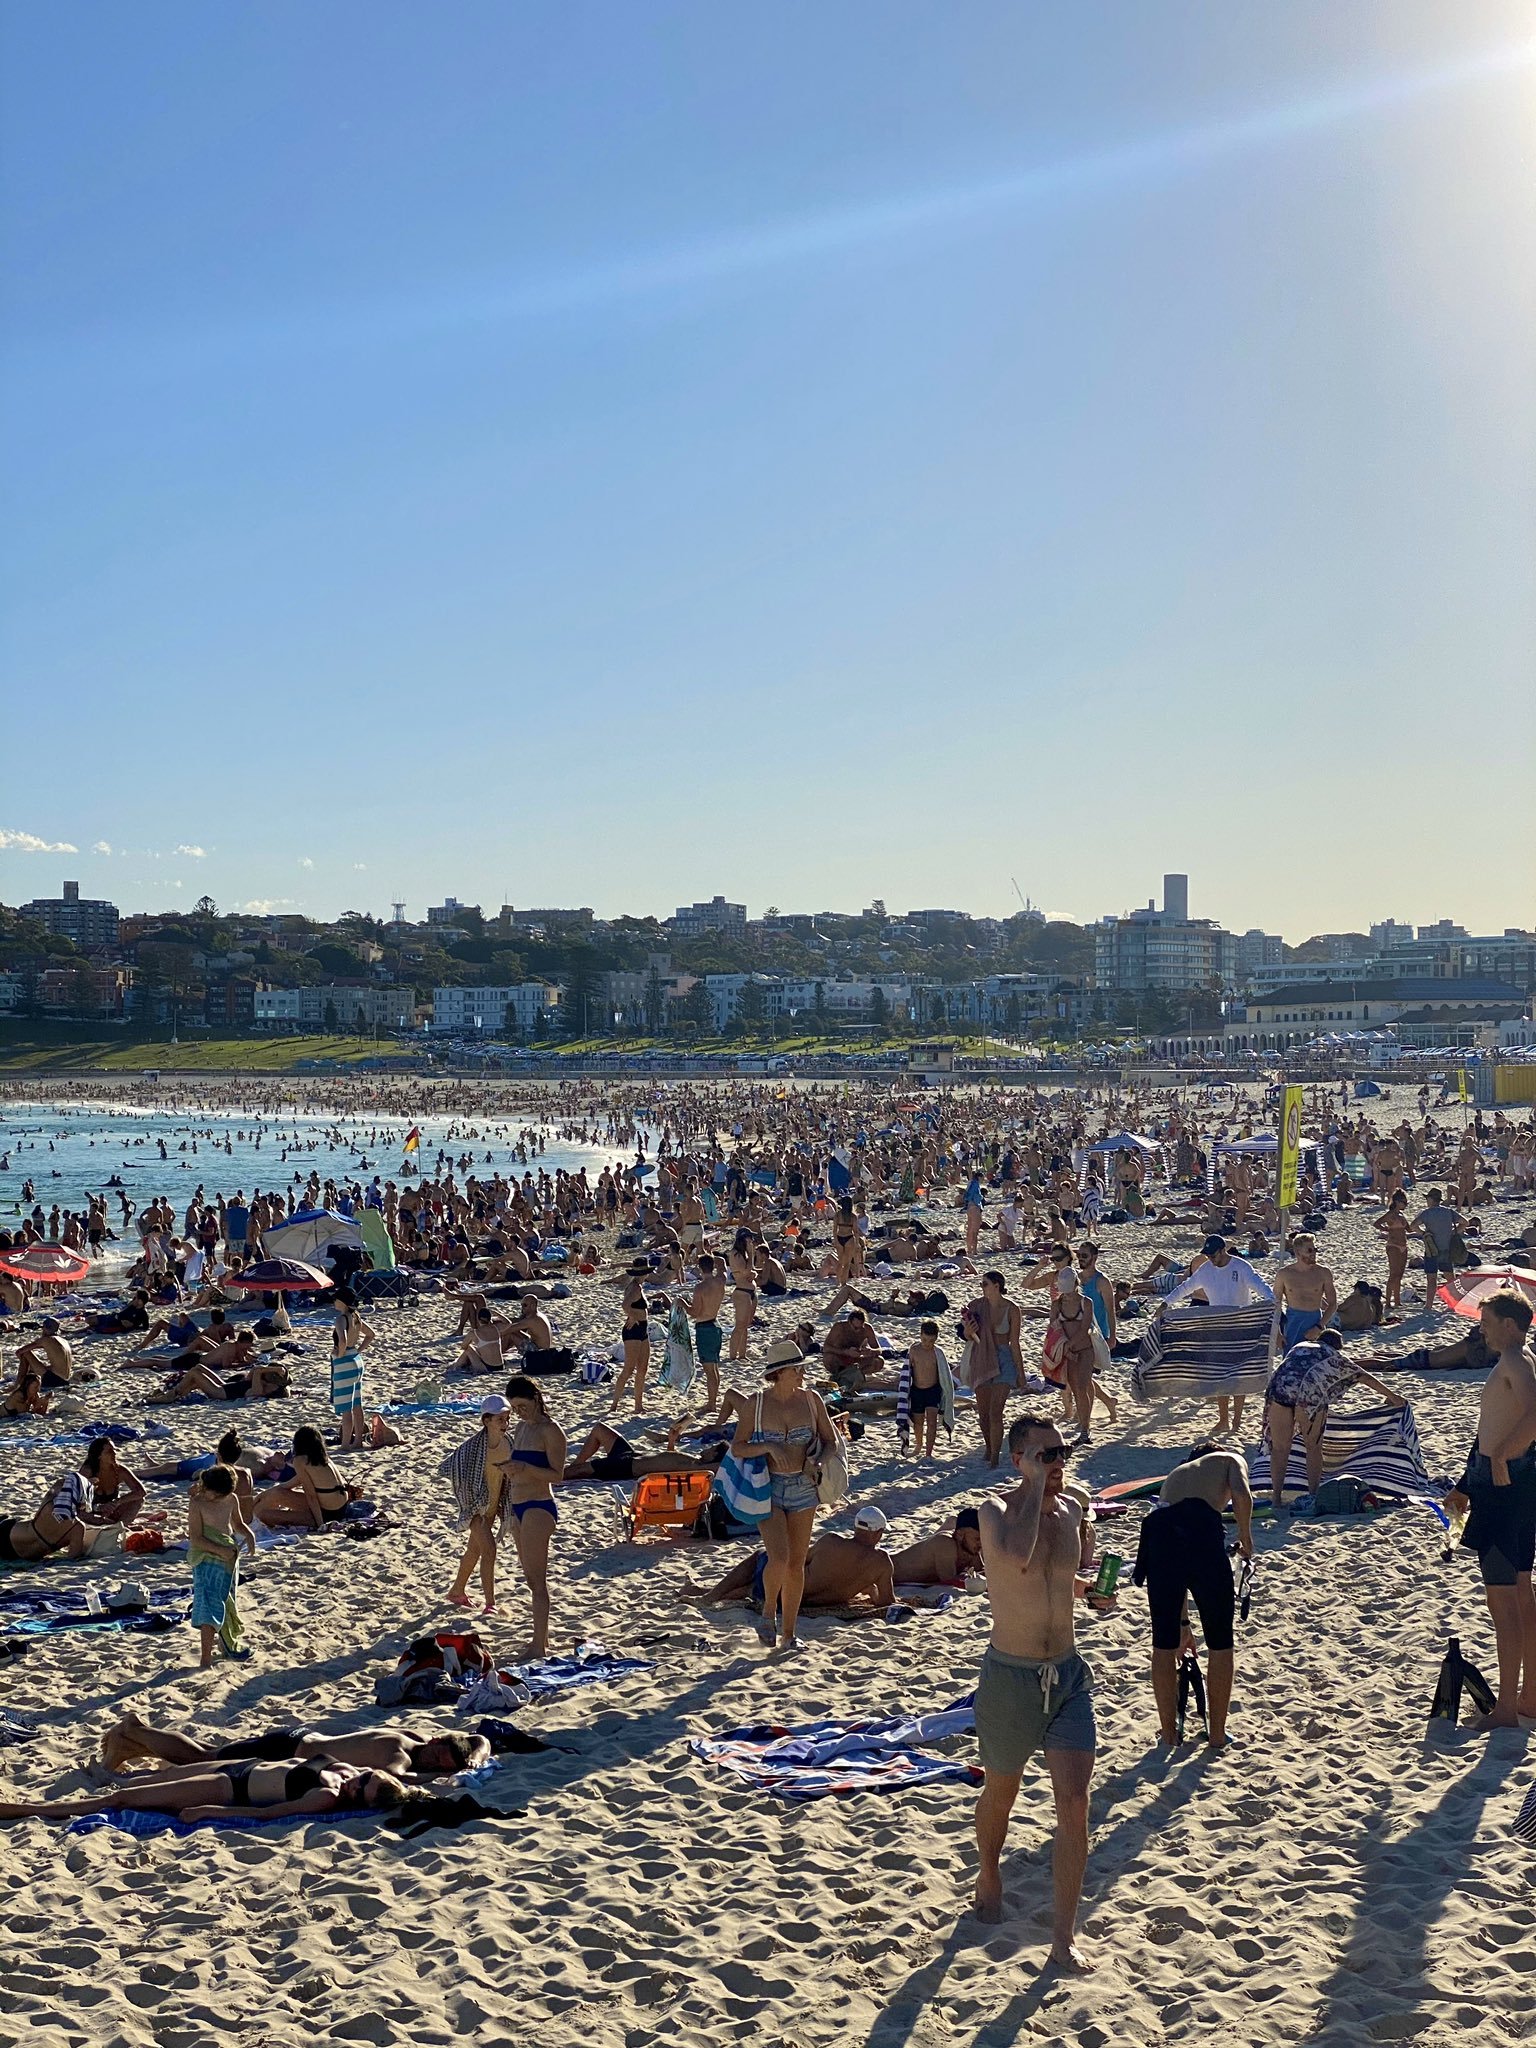 澳大利亚宣布非居民不得入境第二日:海滩游客爆满